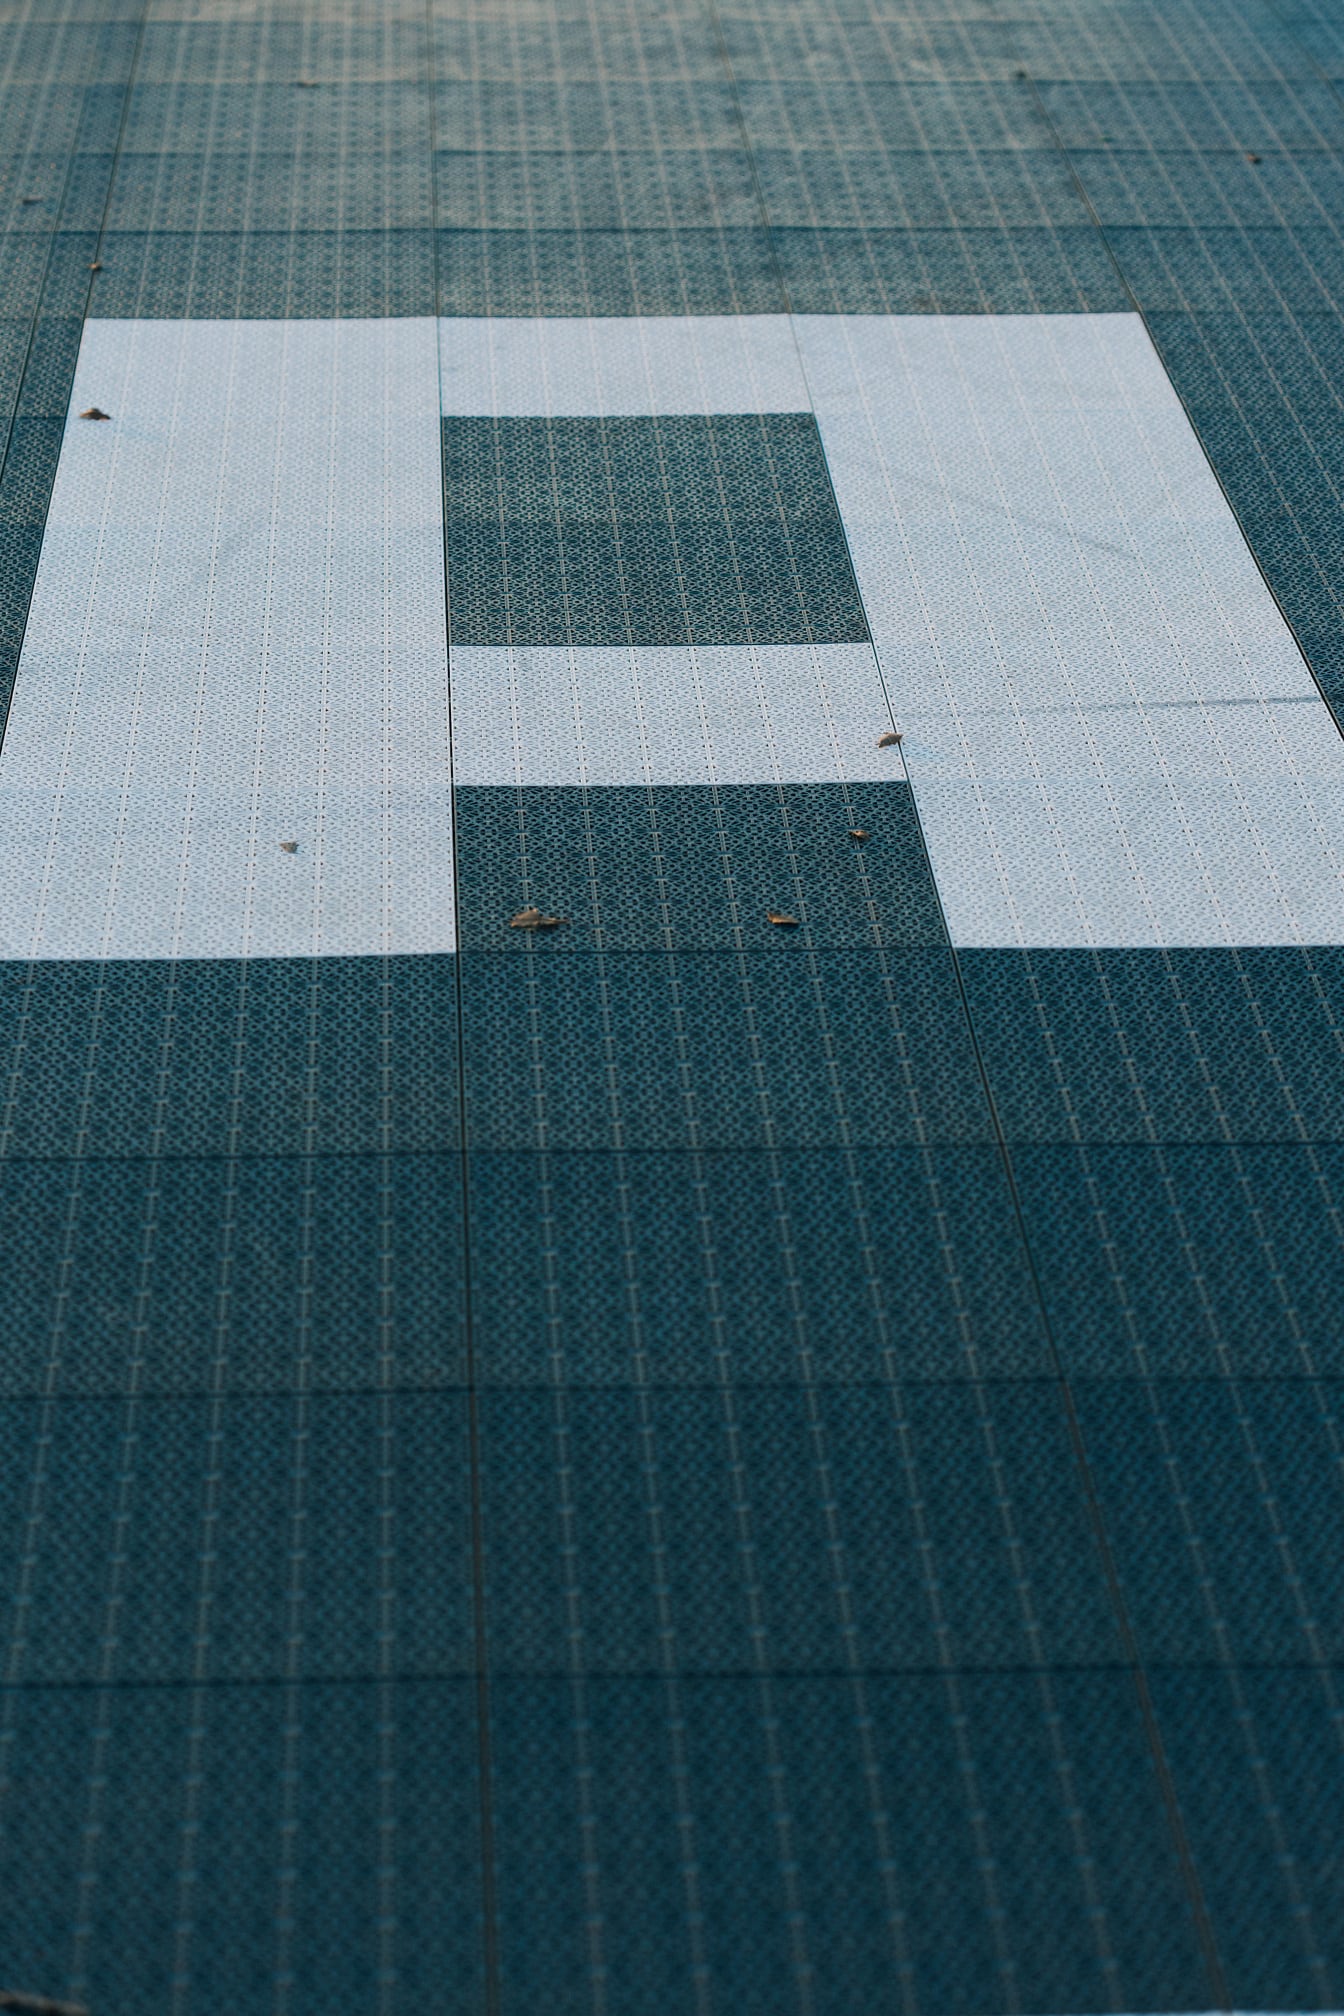 Gros plan d’une lettre (A) sur le sol avec un motif géométrique en plastique